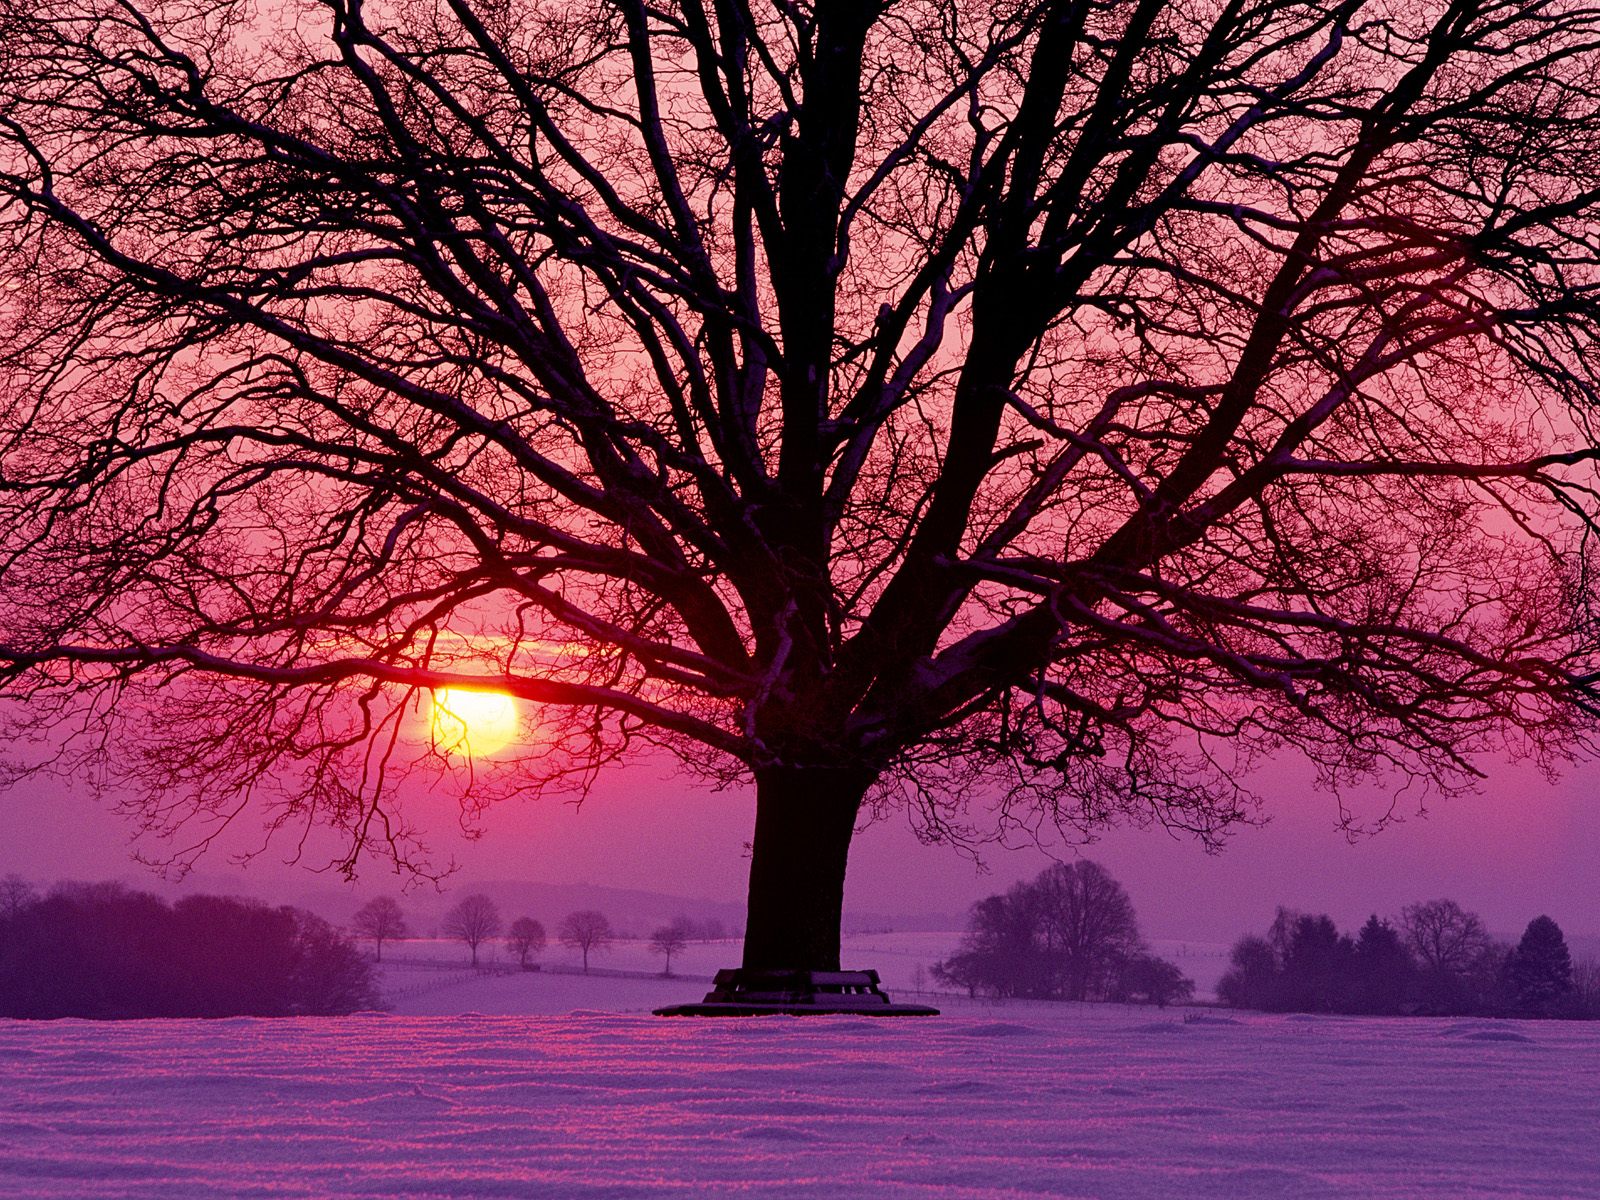 Скачать обои бесплатно Солнце, Снег, Дерево, Земля/природа, Закат Солнца картинка на рабочий стол ПК